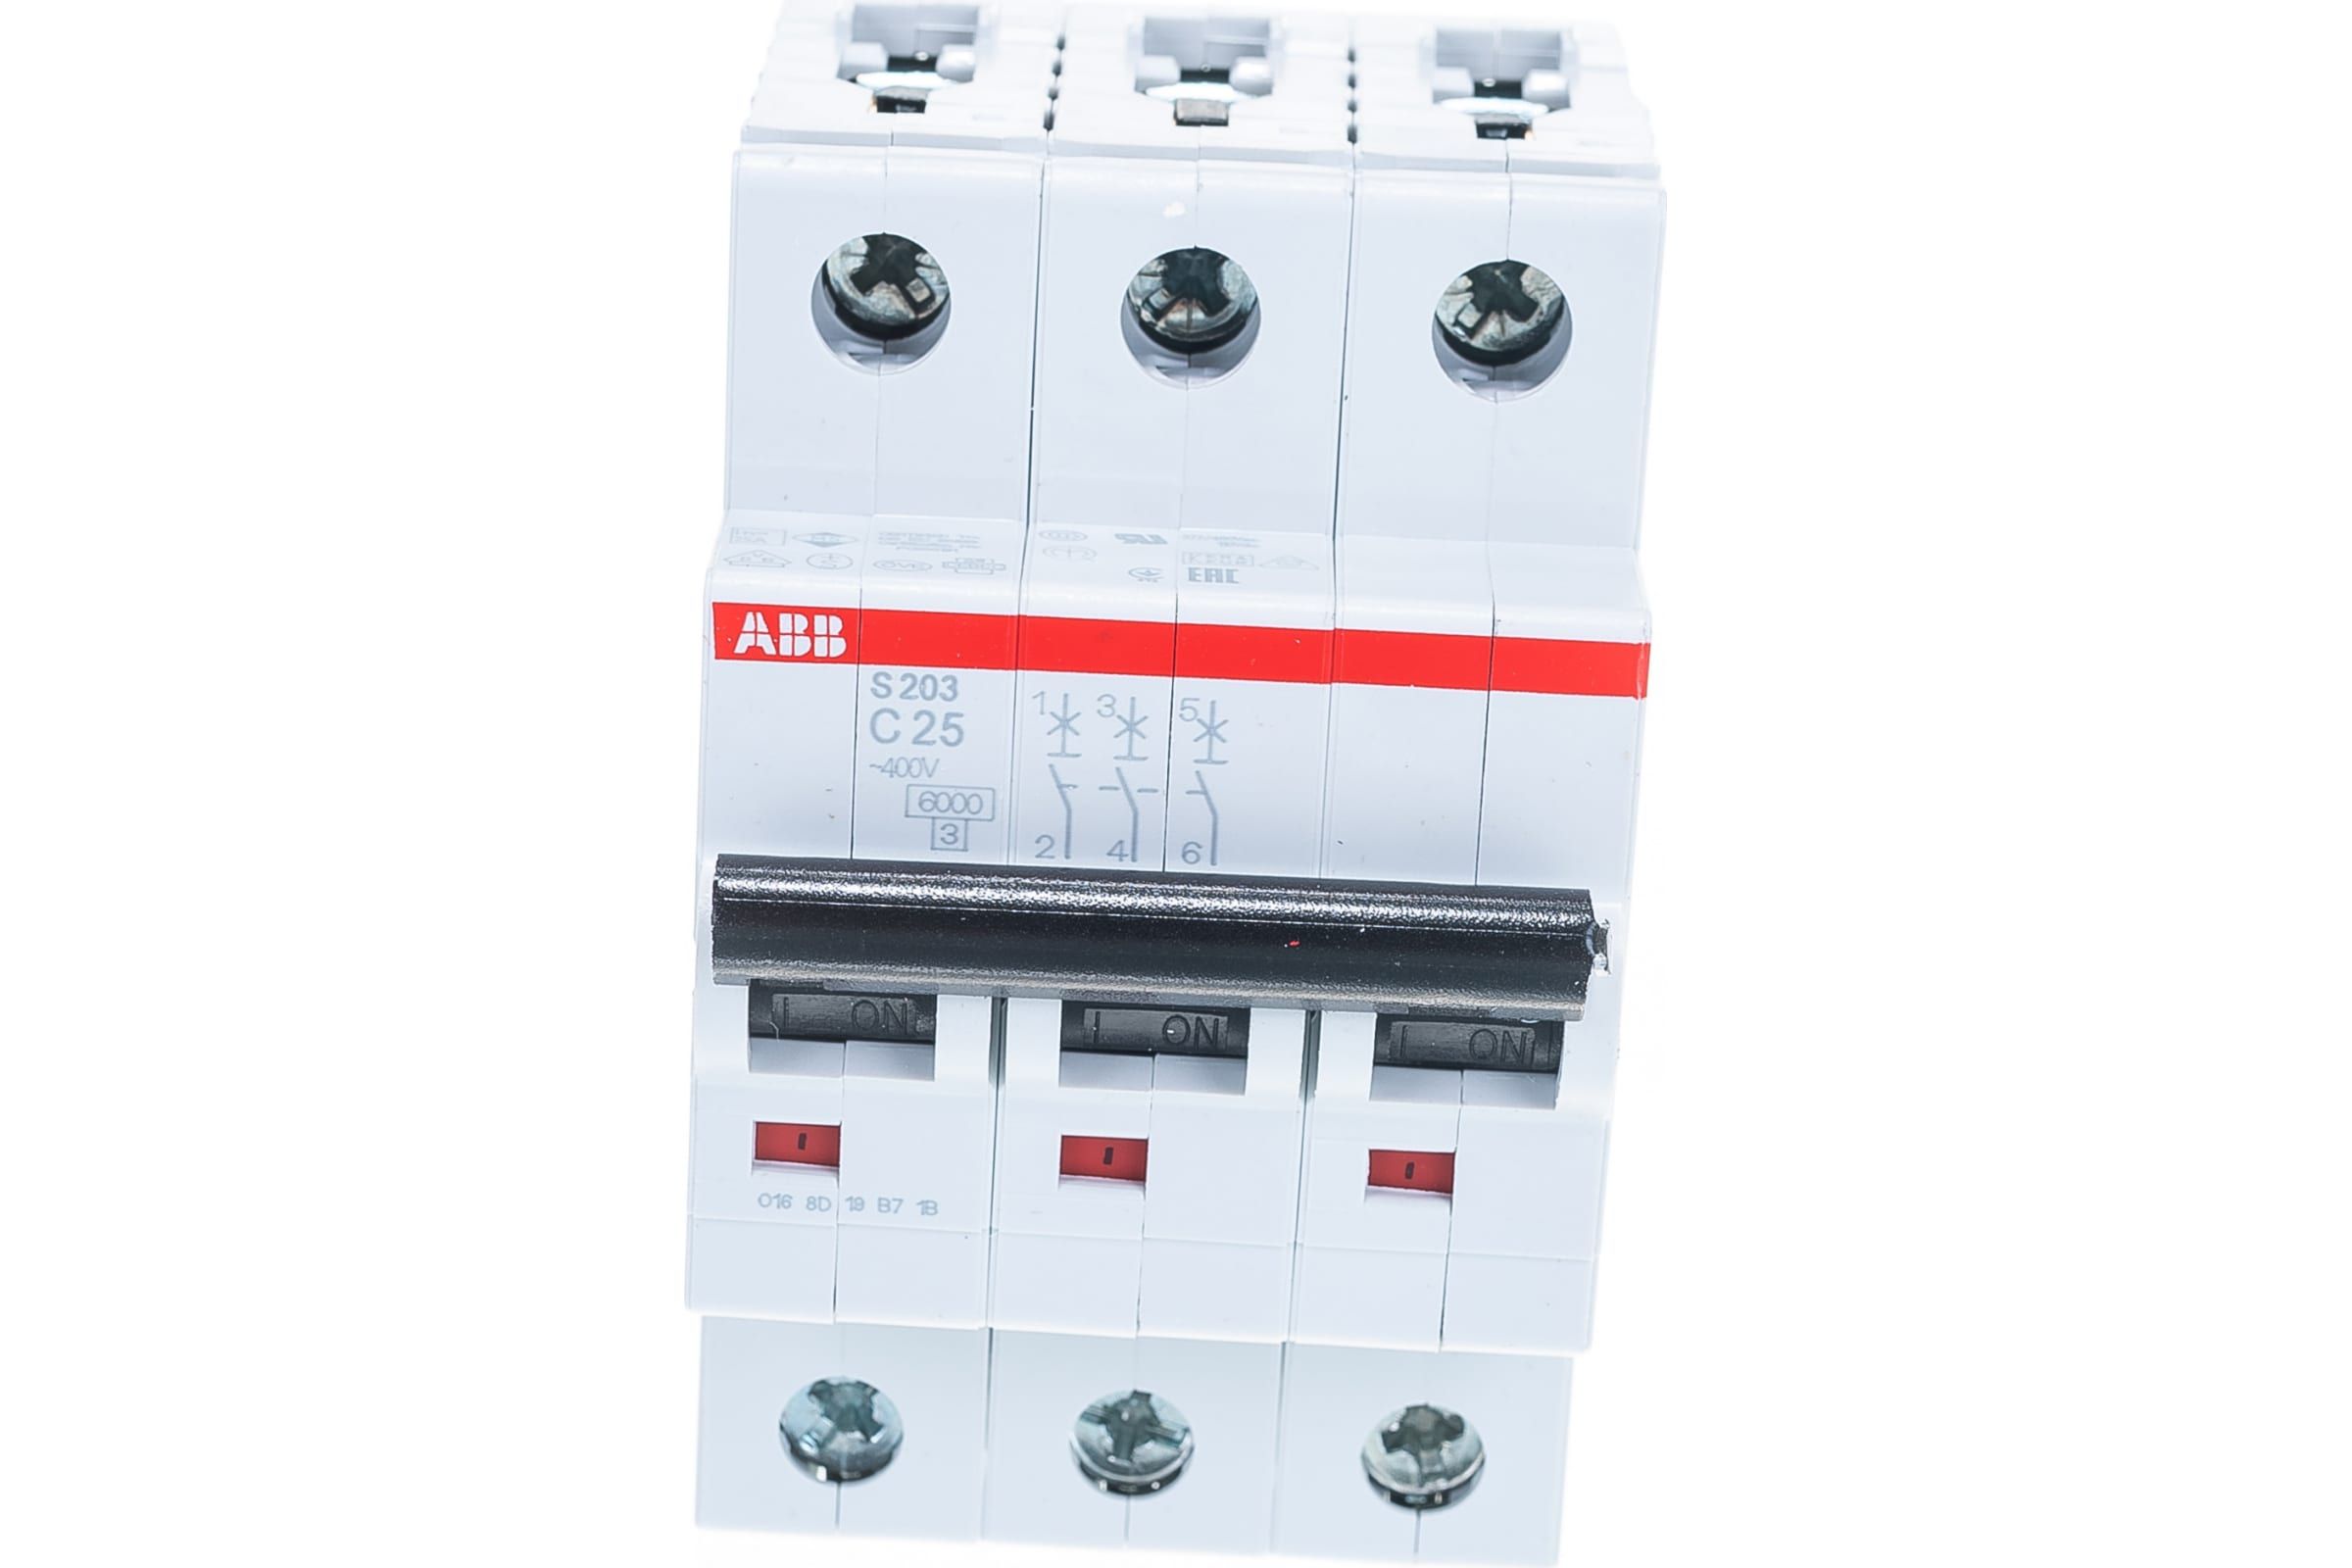 Автоматический выключатель s203 6ка. Автомат ABB s203 c25. Автоматический выключатель ABB 3-полюсный s203 c50 (автомат). Автомат ABB 25 ампер. S203 c25 3p.